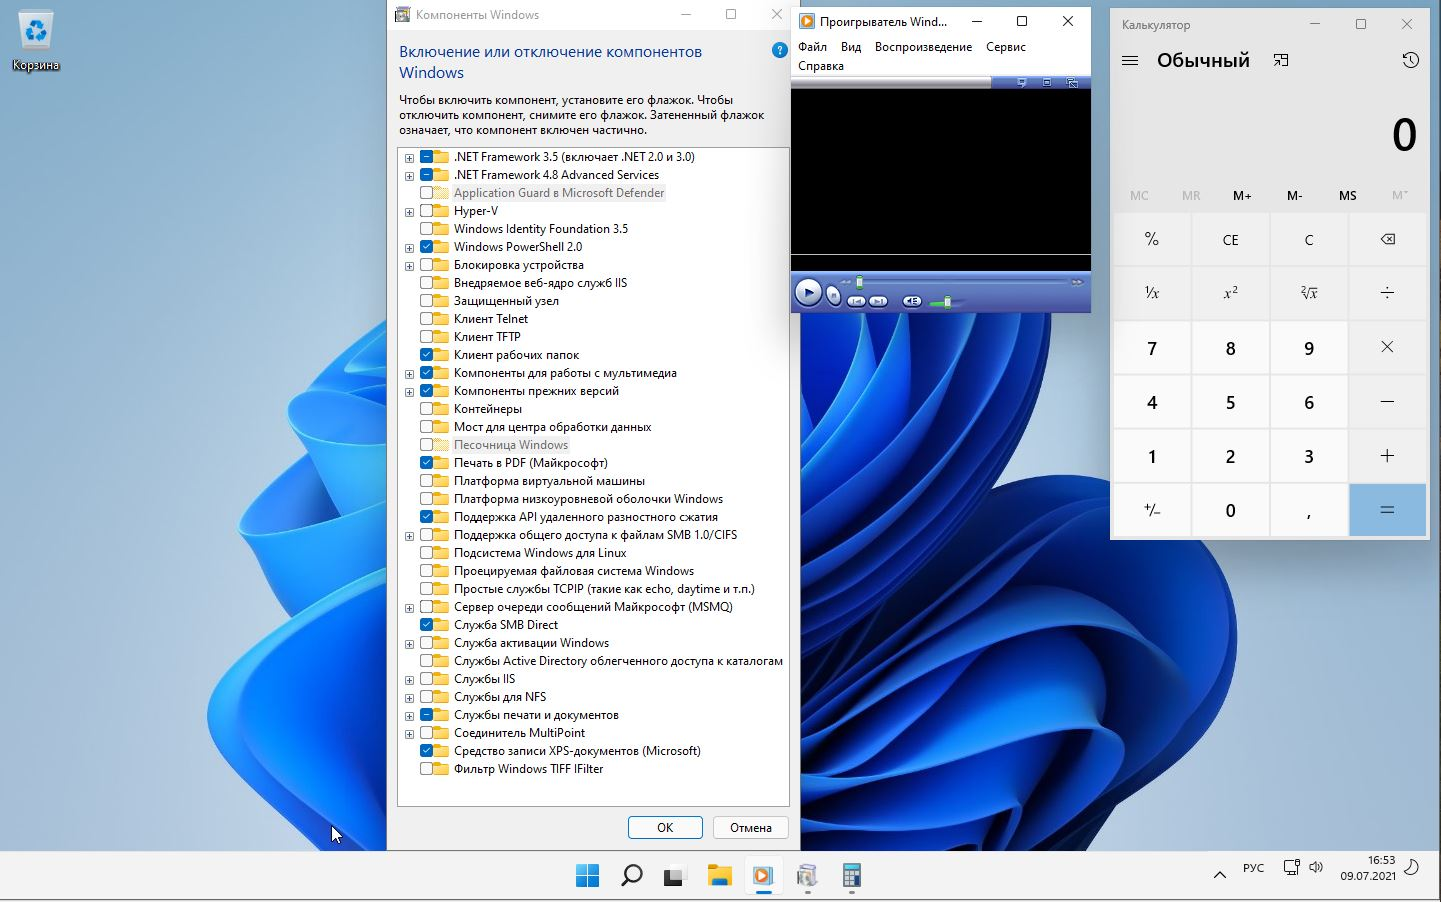 Windows 11 Pro 10.0.22000.65 co Release DREY by Lopatkin x64 2021 Rus